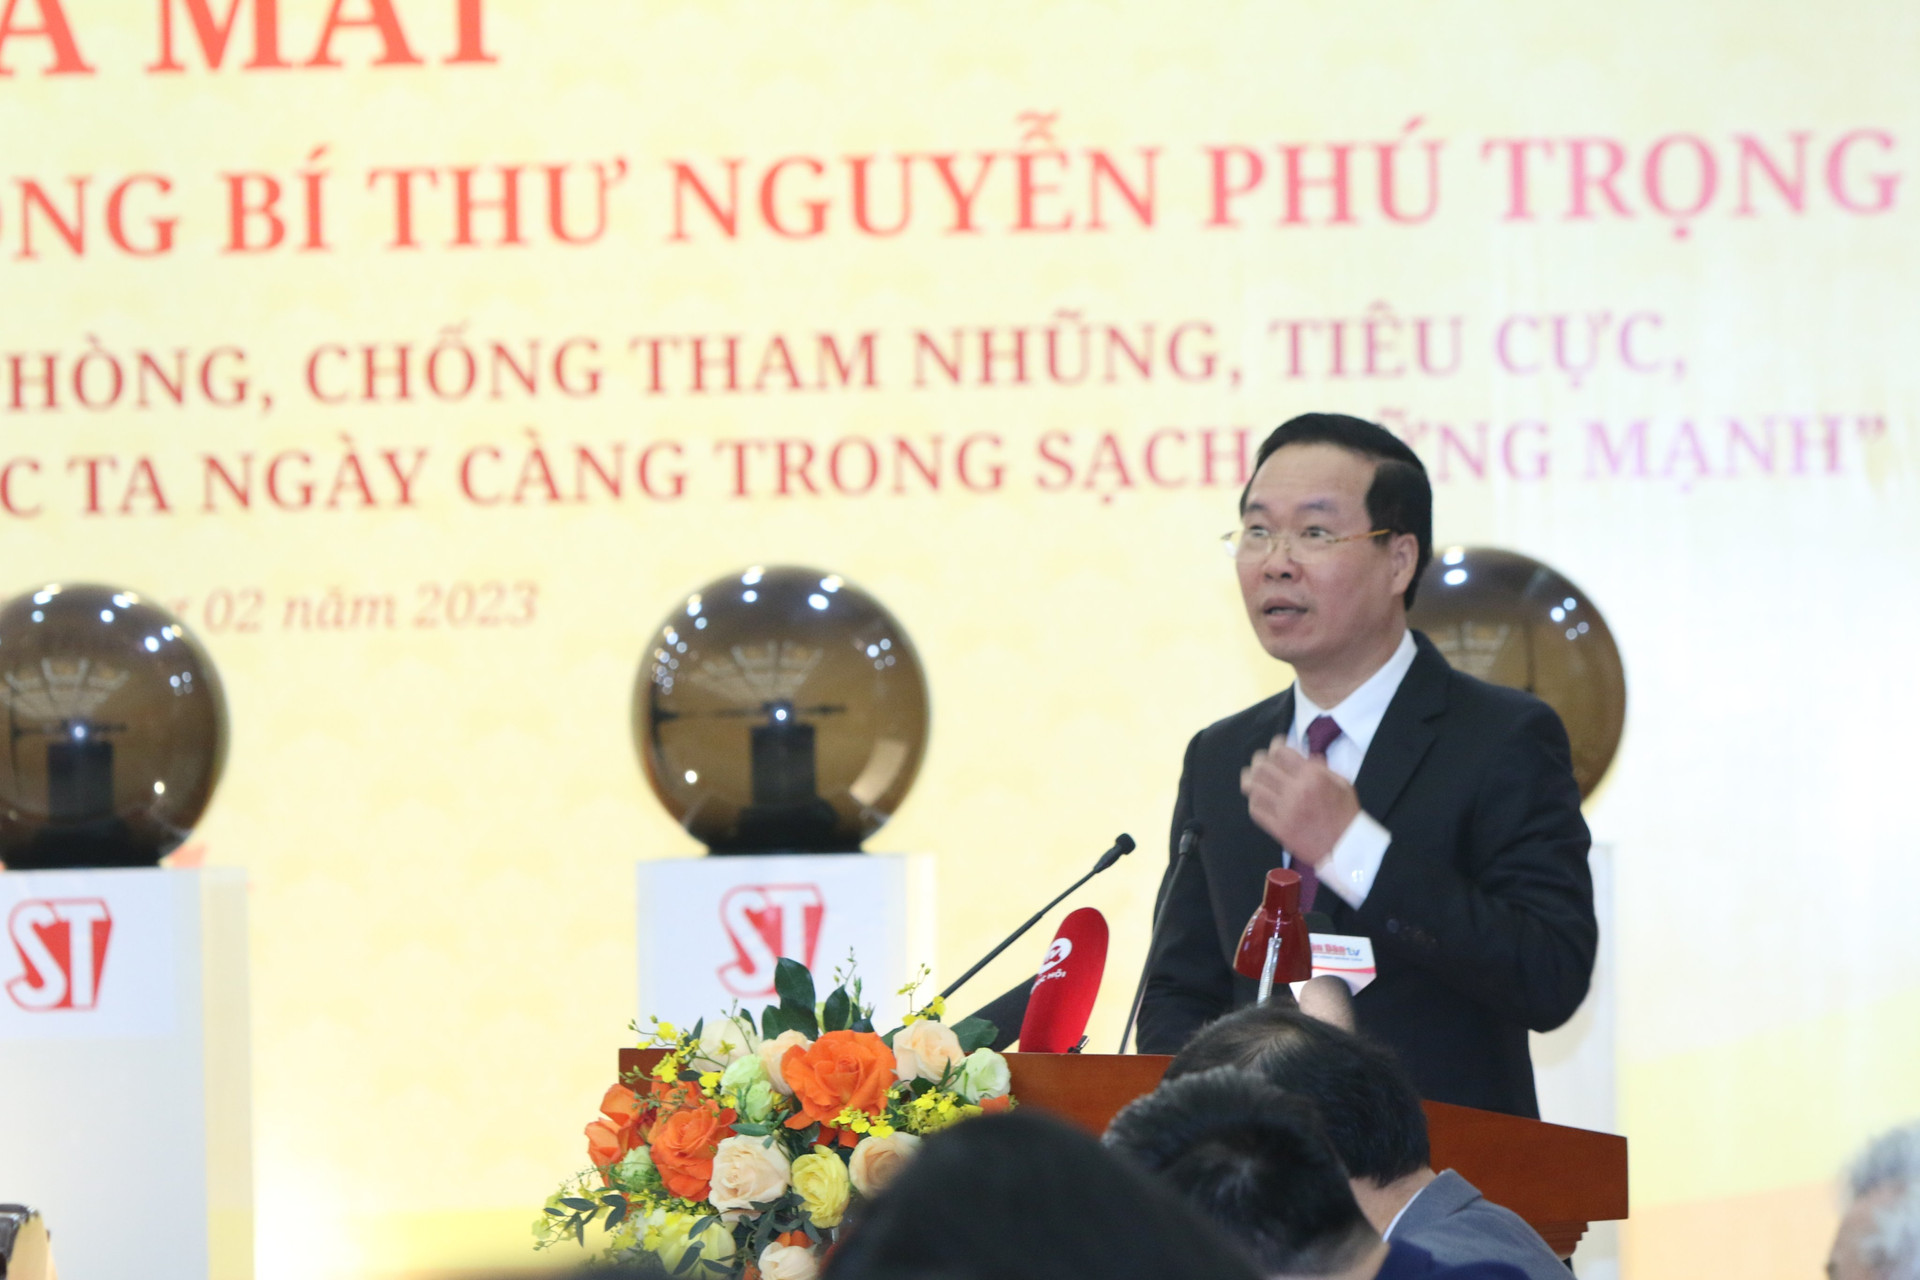 Chính thức ra mắt cuốn sách về phòng, chống tham nhũng của Tổng Bí thư Nguyễn Phú Trọng